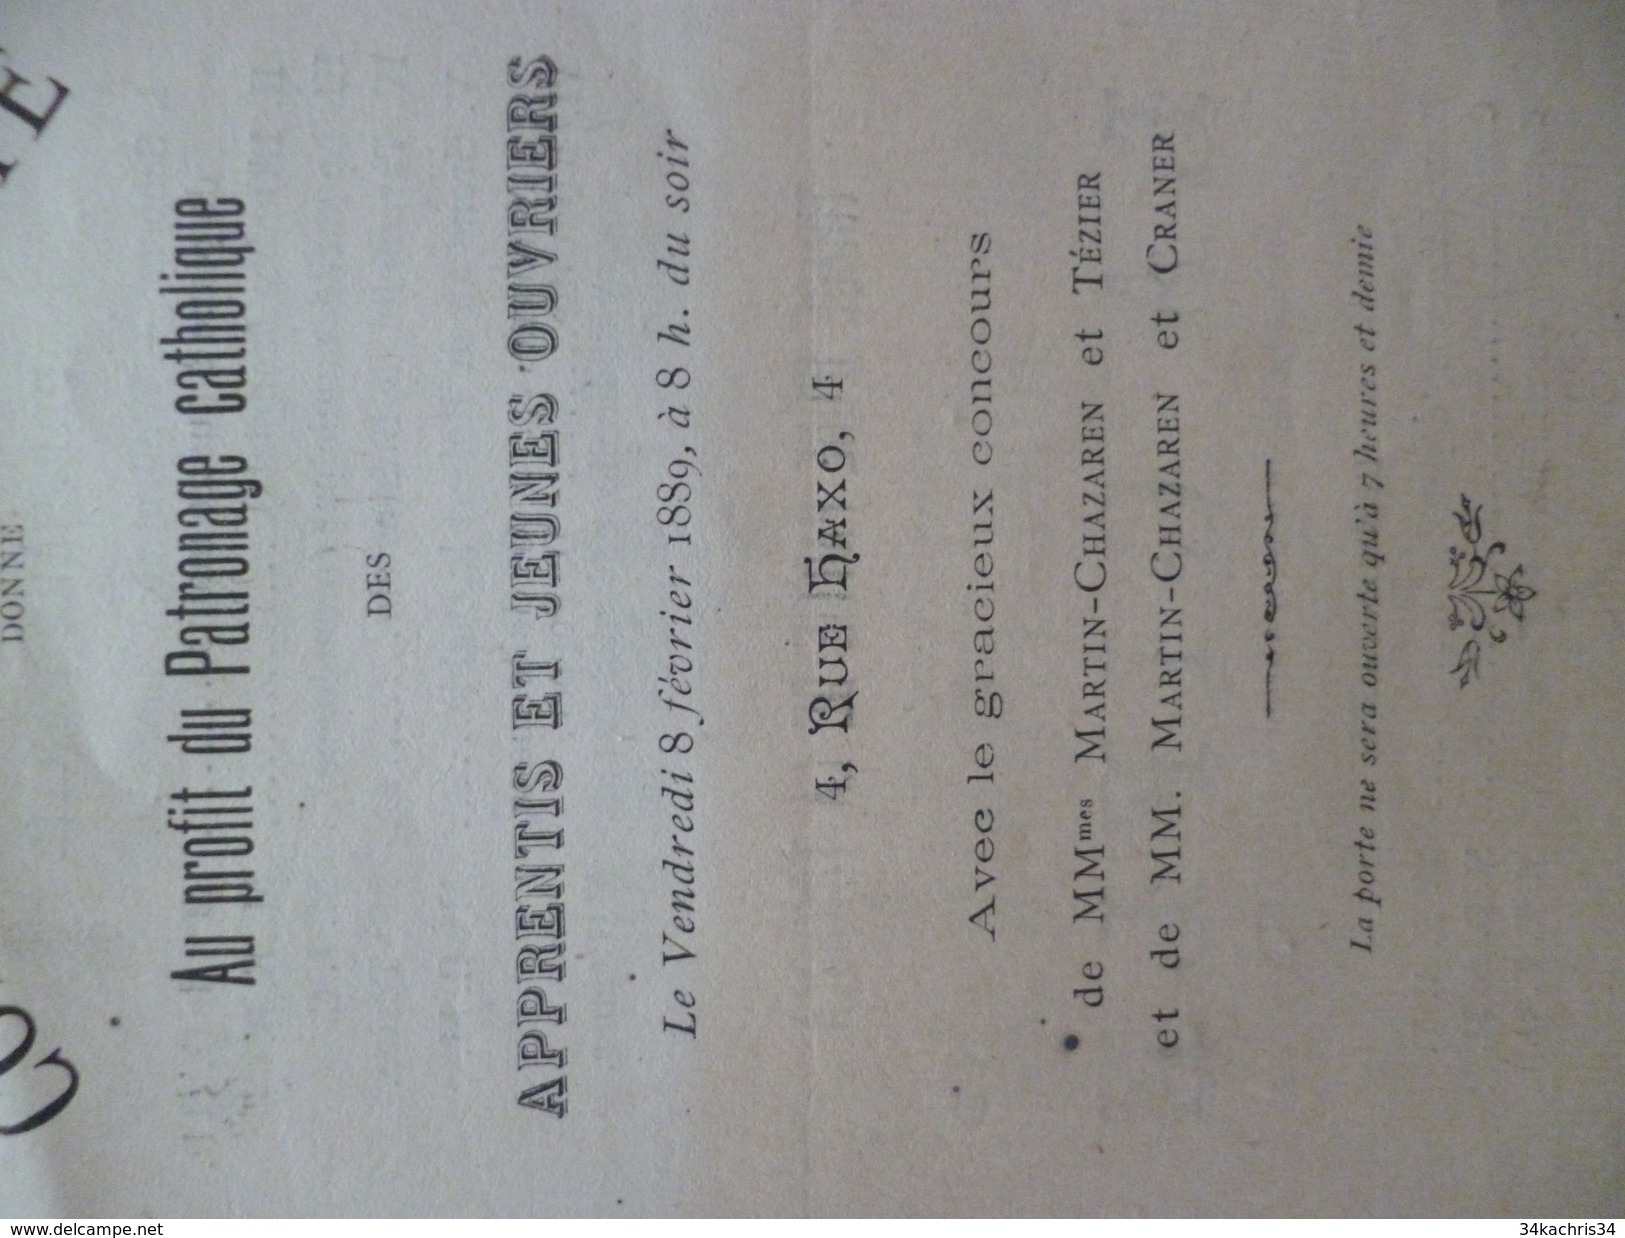 Programme Illustré D'un Dessin Concert De Charité Patronage Catholique 8/02/1889 Grenoble Rue Haxo - Programmes